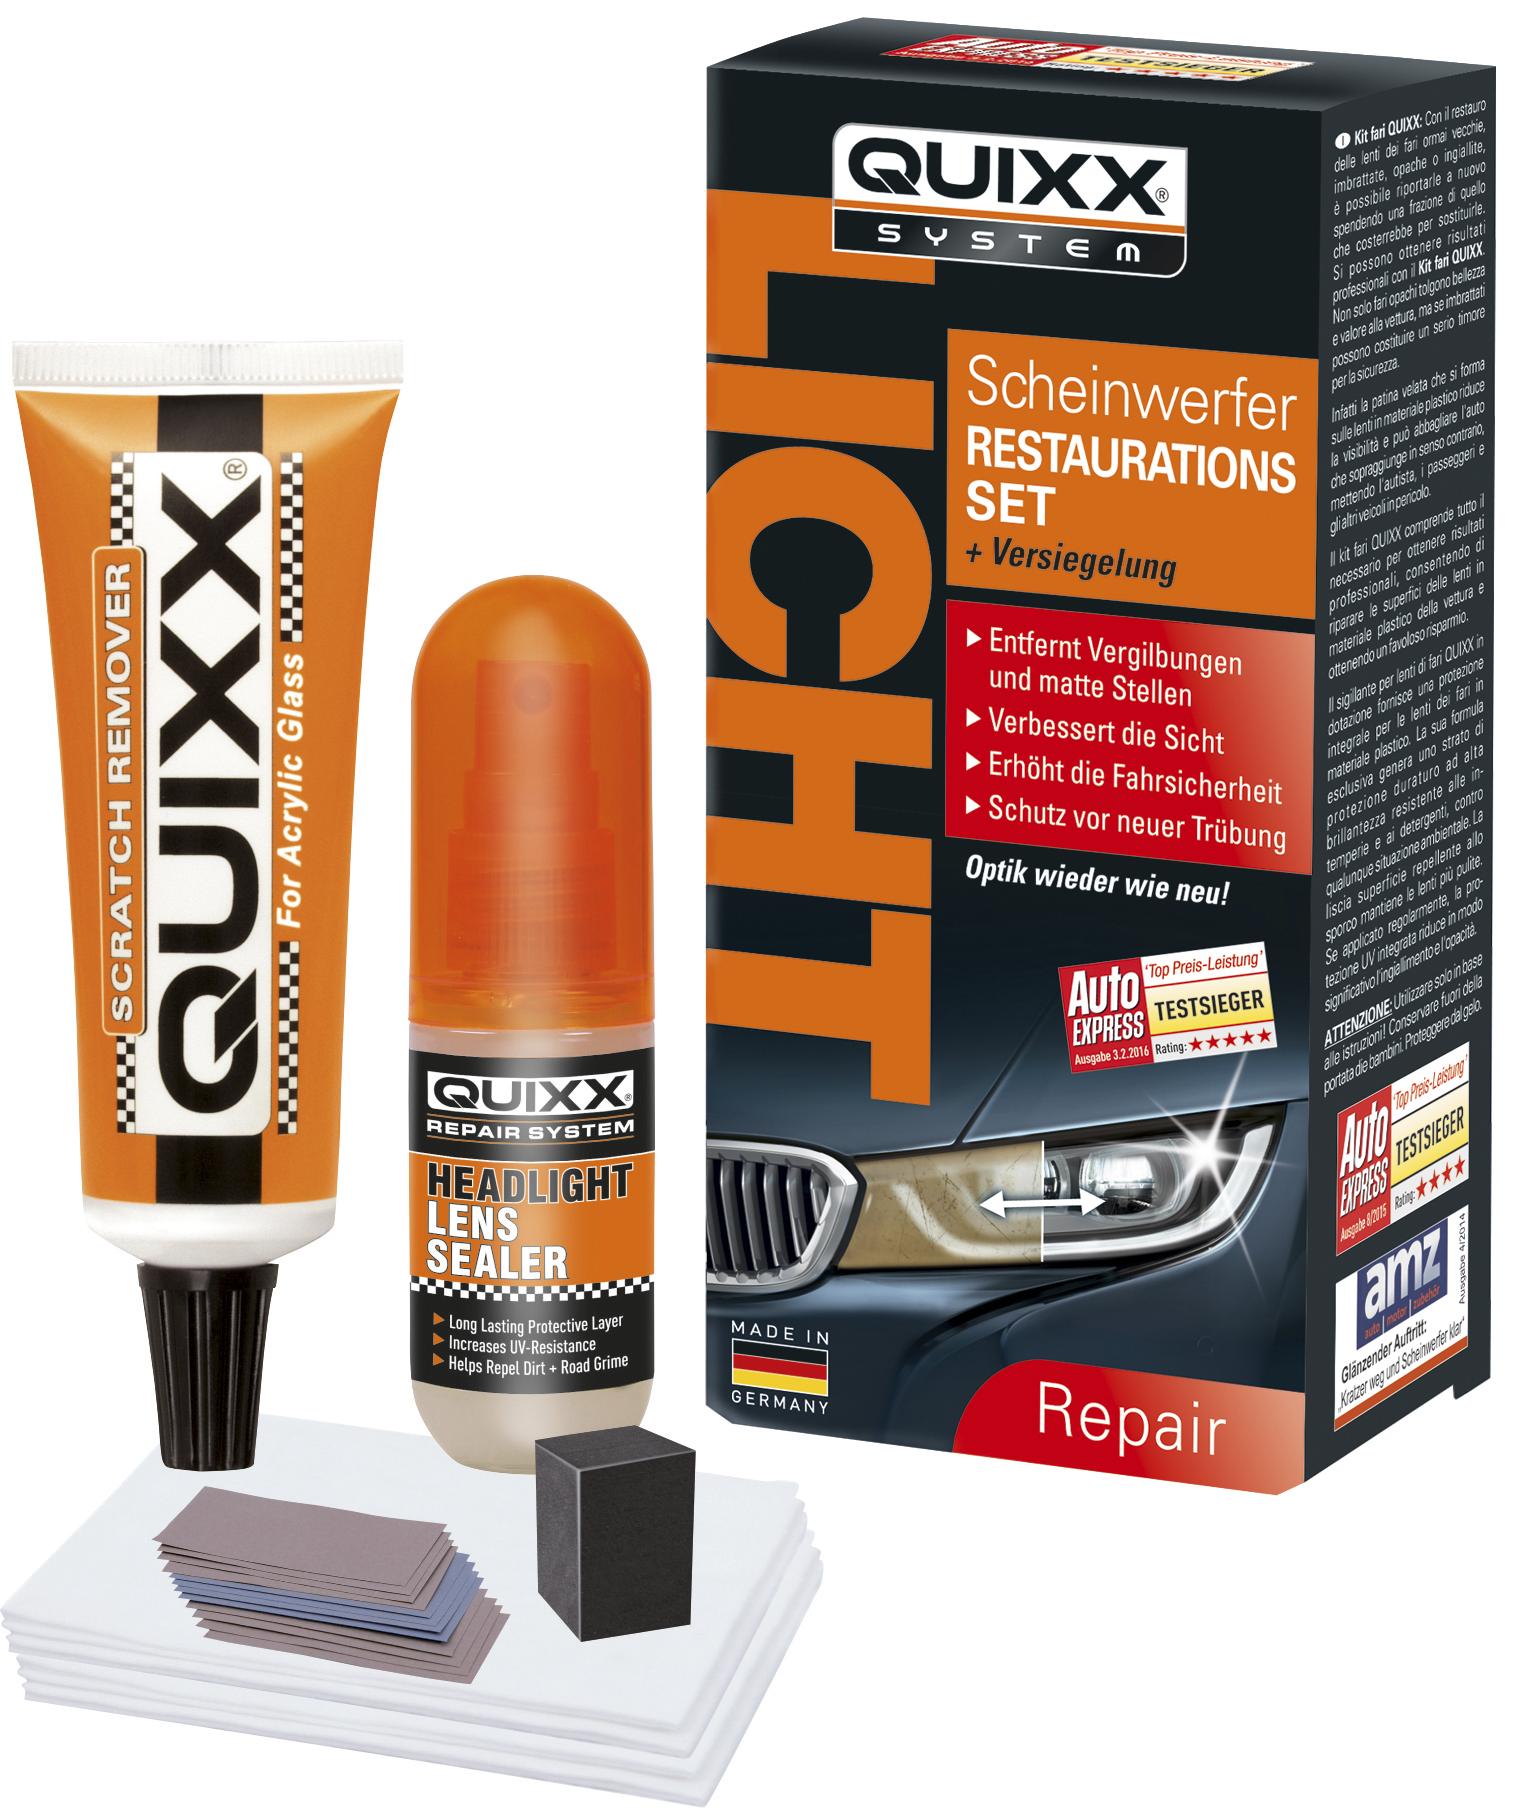 Quixx Scheinwerfer Restaurations-Set